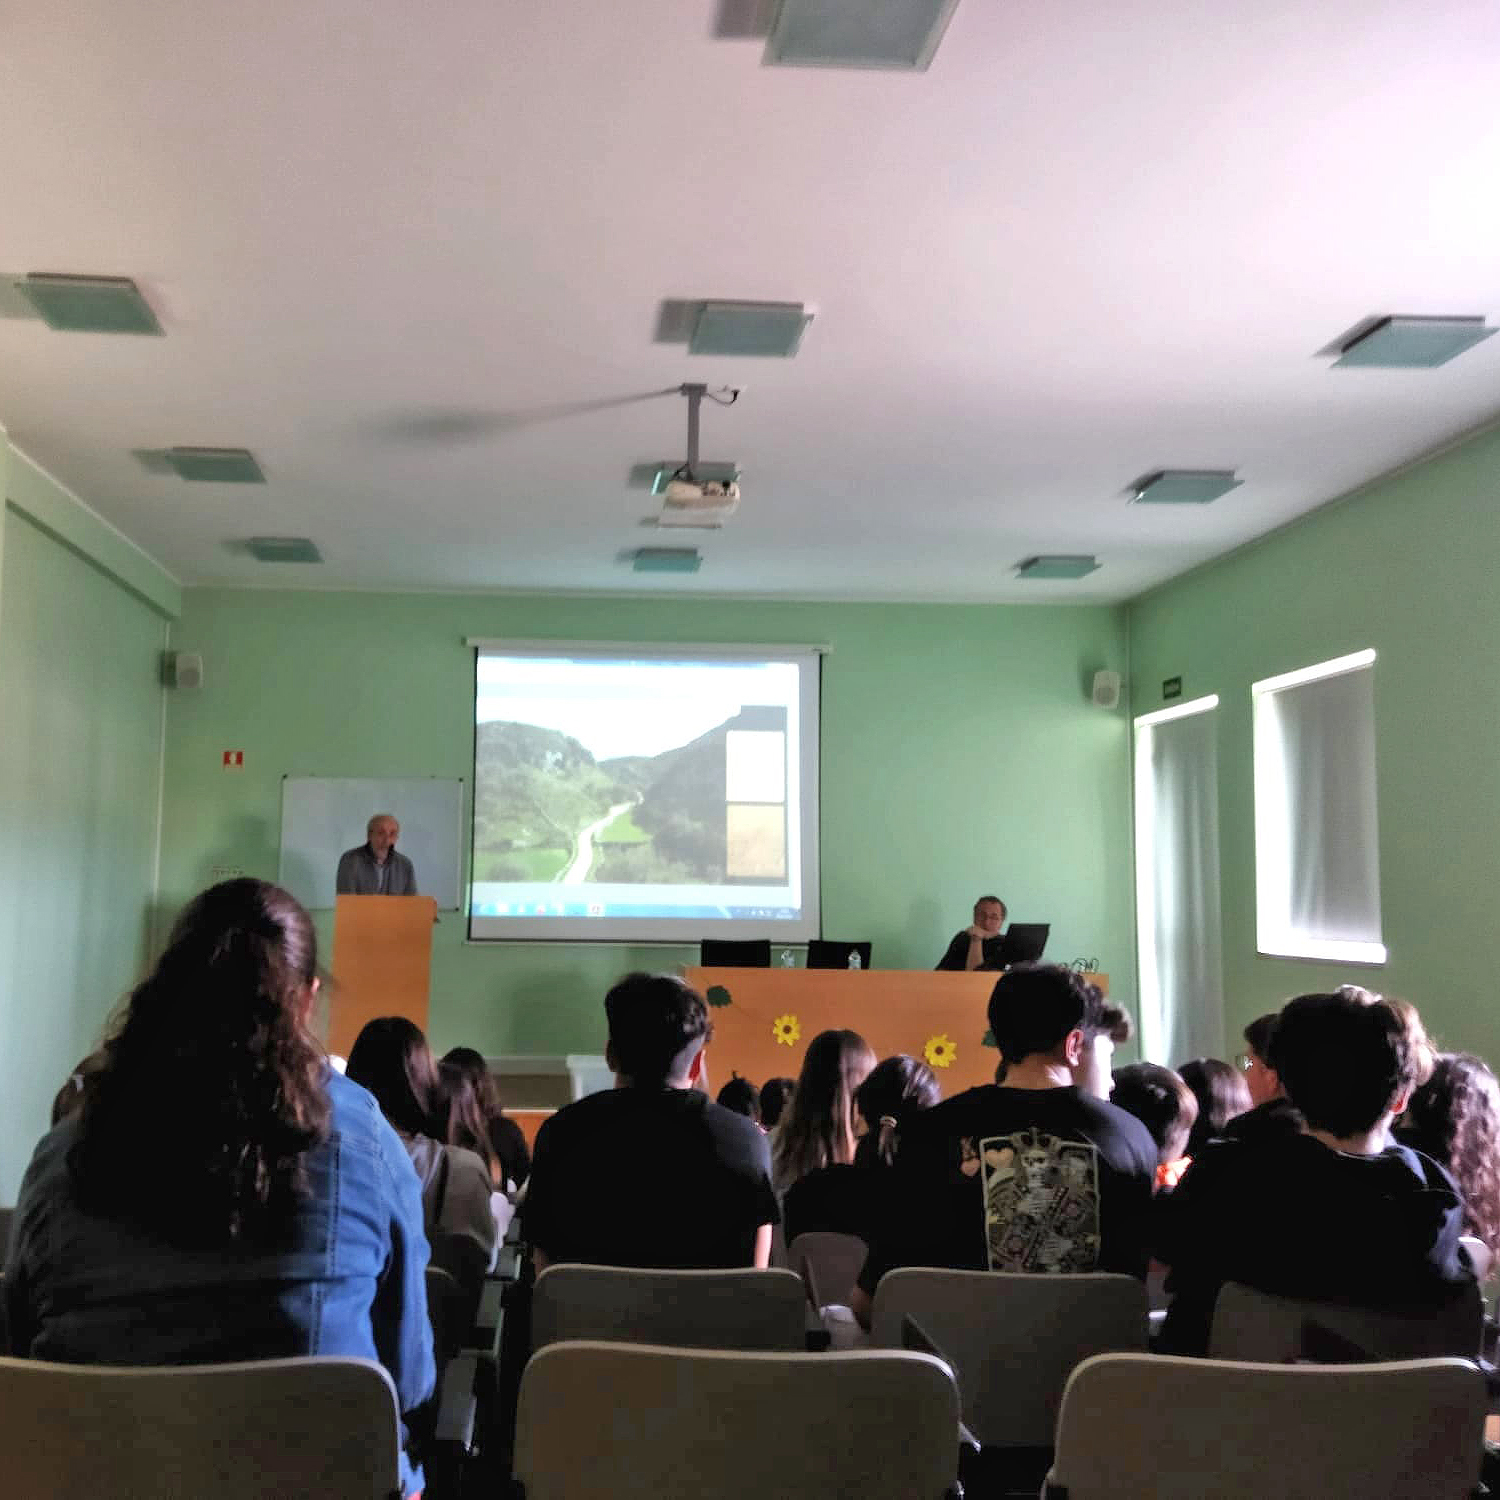 Sessão de partilha de conhecimentos em torno de temas do Património Cultural associado à Festa do Mosaico CenCyL, no Auditório do Agrupamento de Escolas de Mêda.